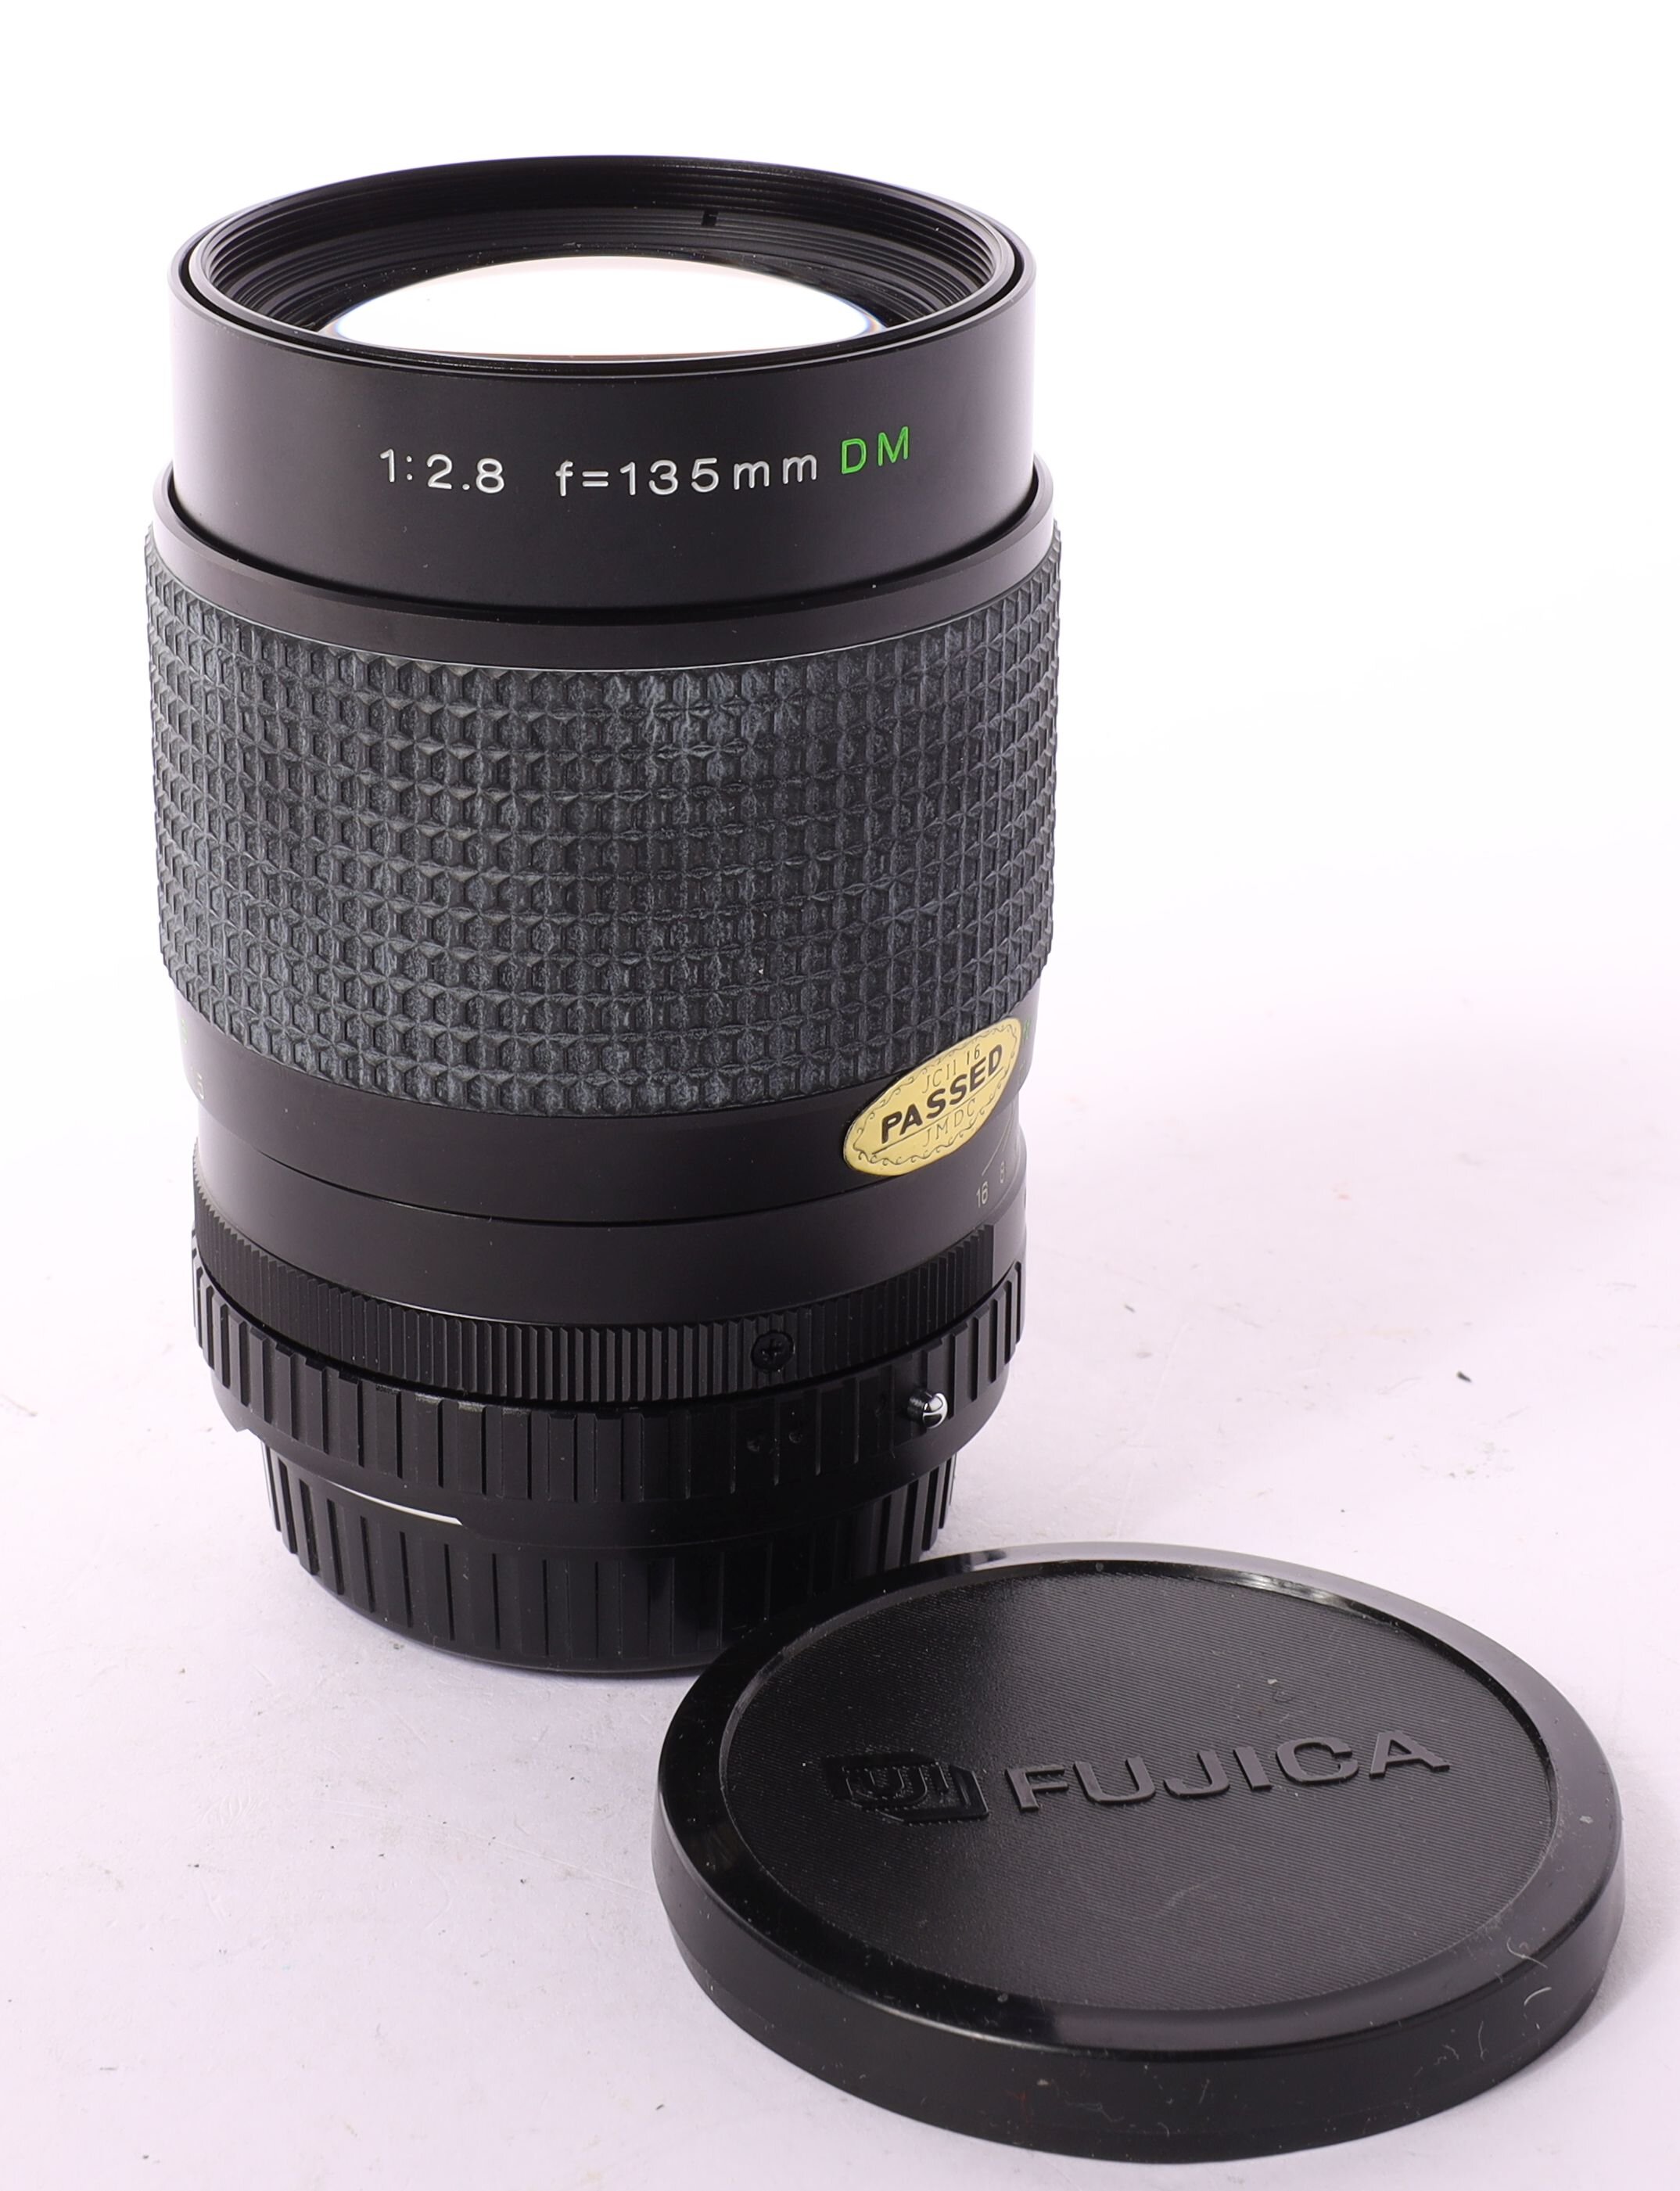 Fuji X Fujinar T 2.8/135mm DM